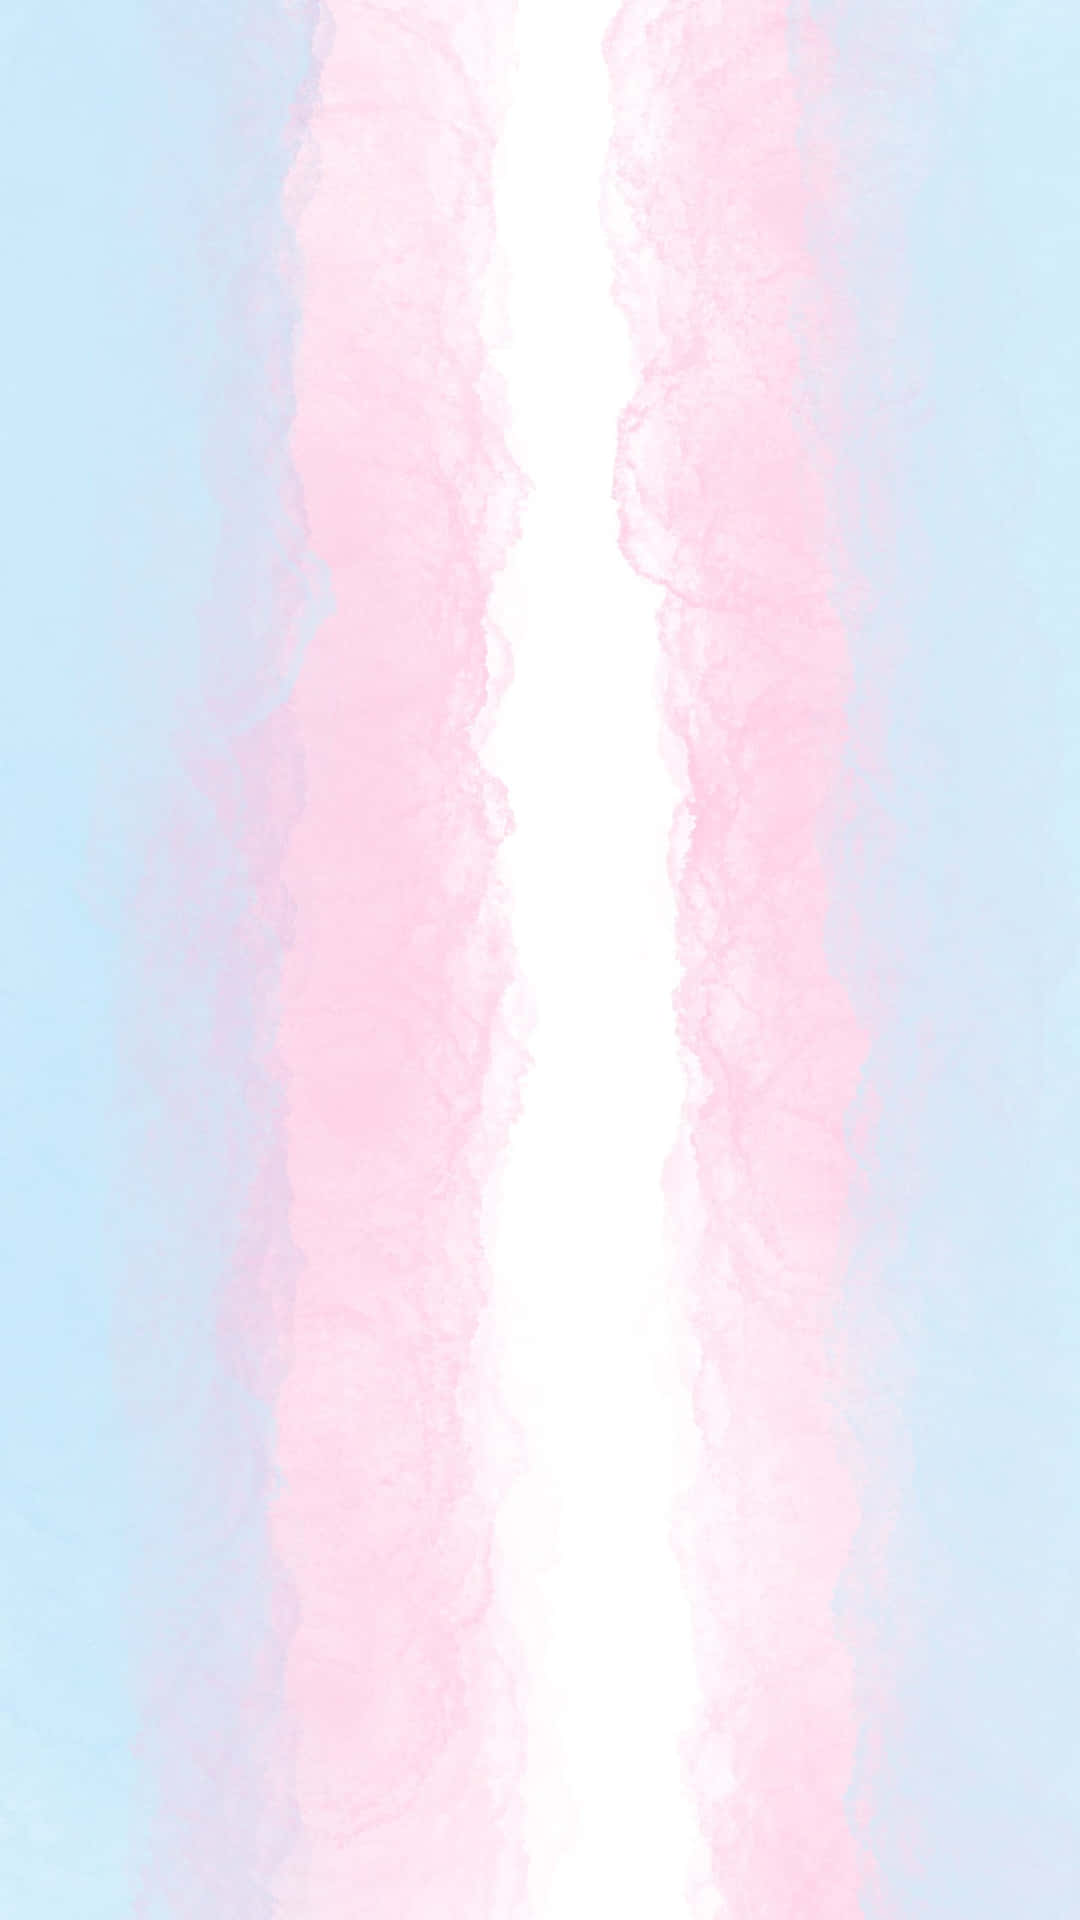 Umfundo De Aquarela Rosa E Azul. Papel de Parede